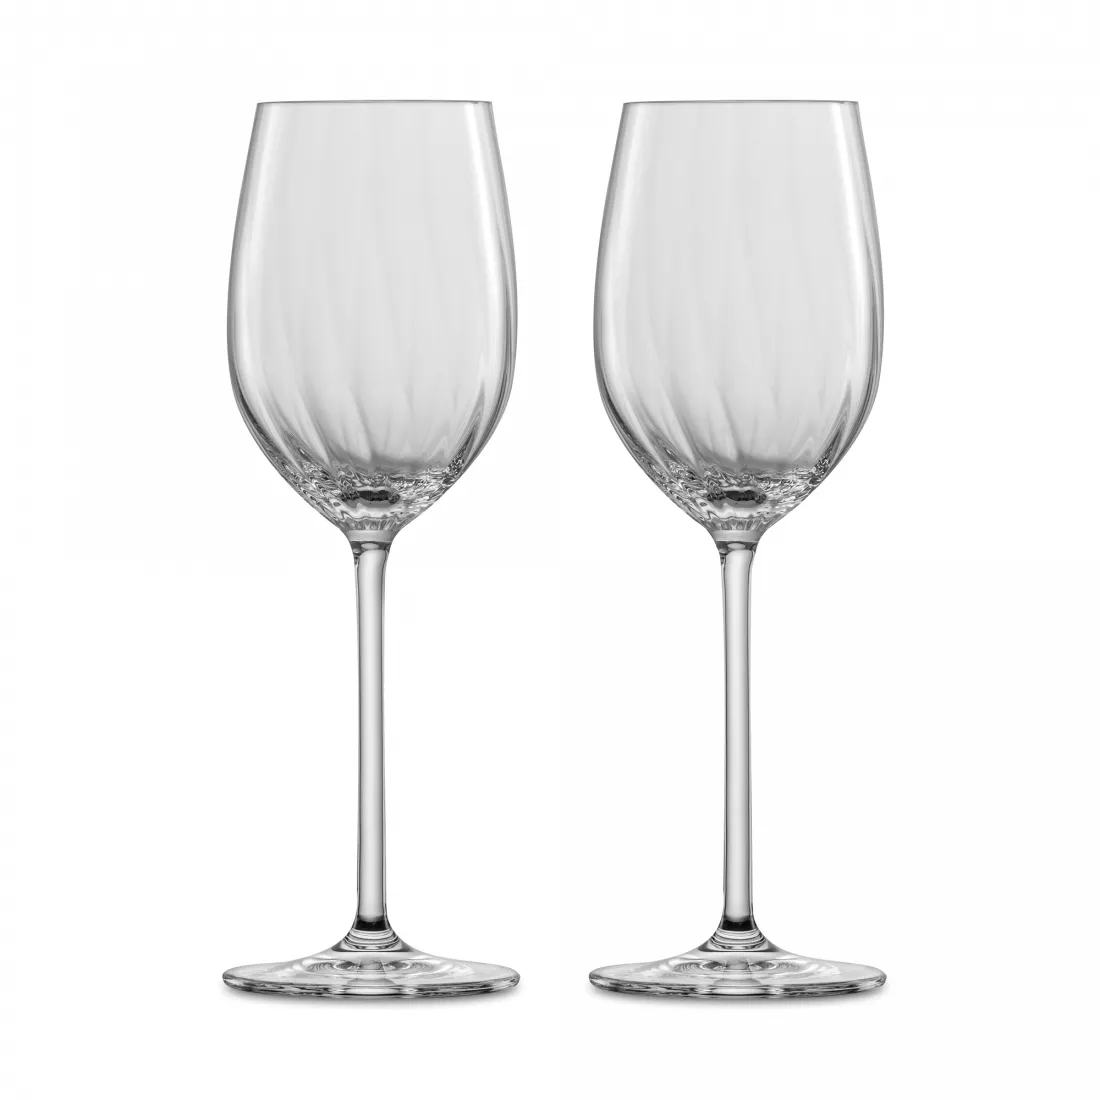 ZWIESEL GLAS Набор бокалов для белого вина, объем 296 мл, 2 шт., серия Prizma